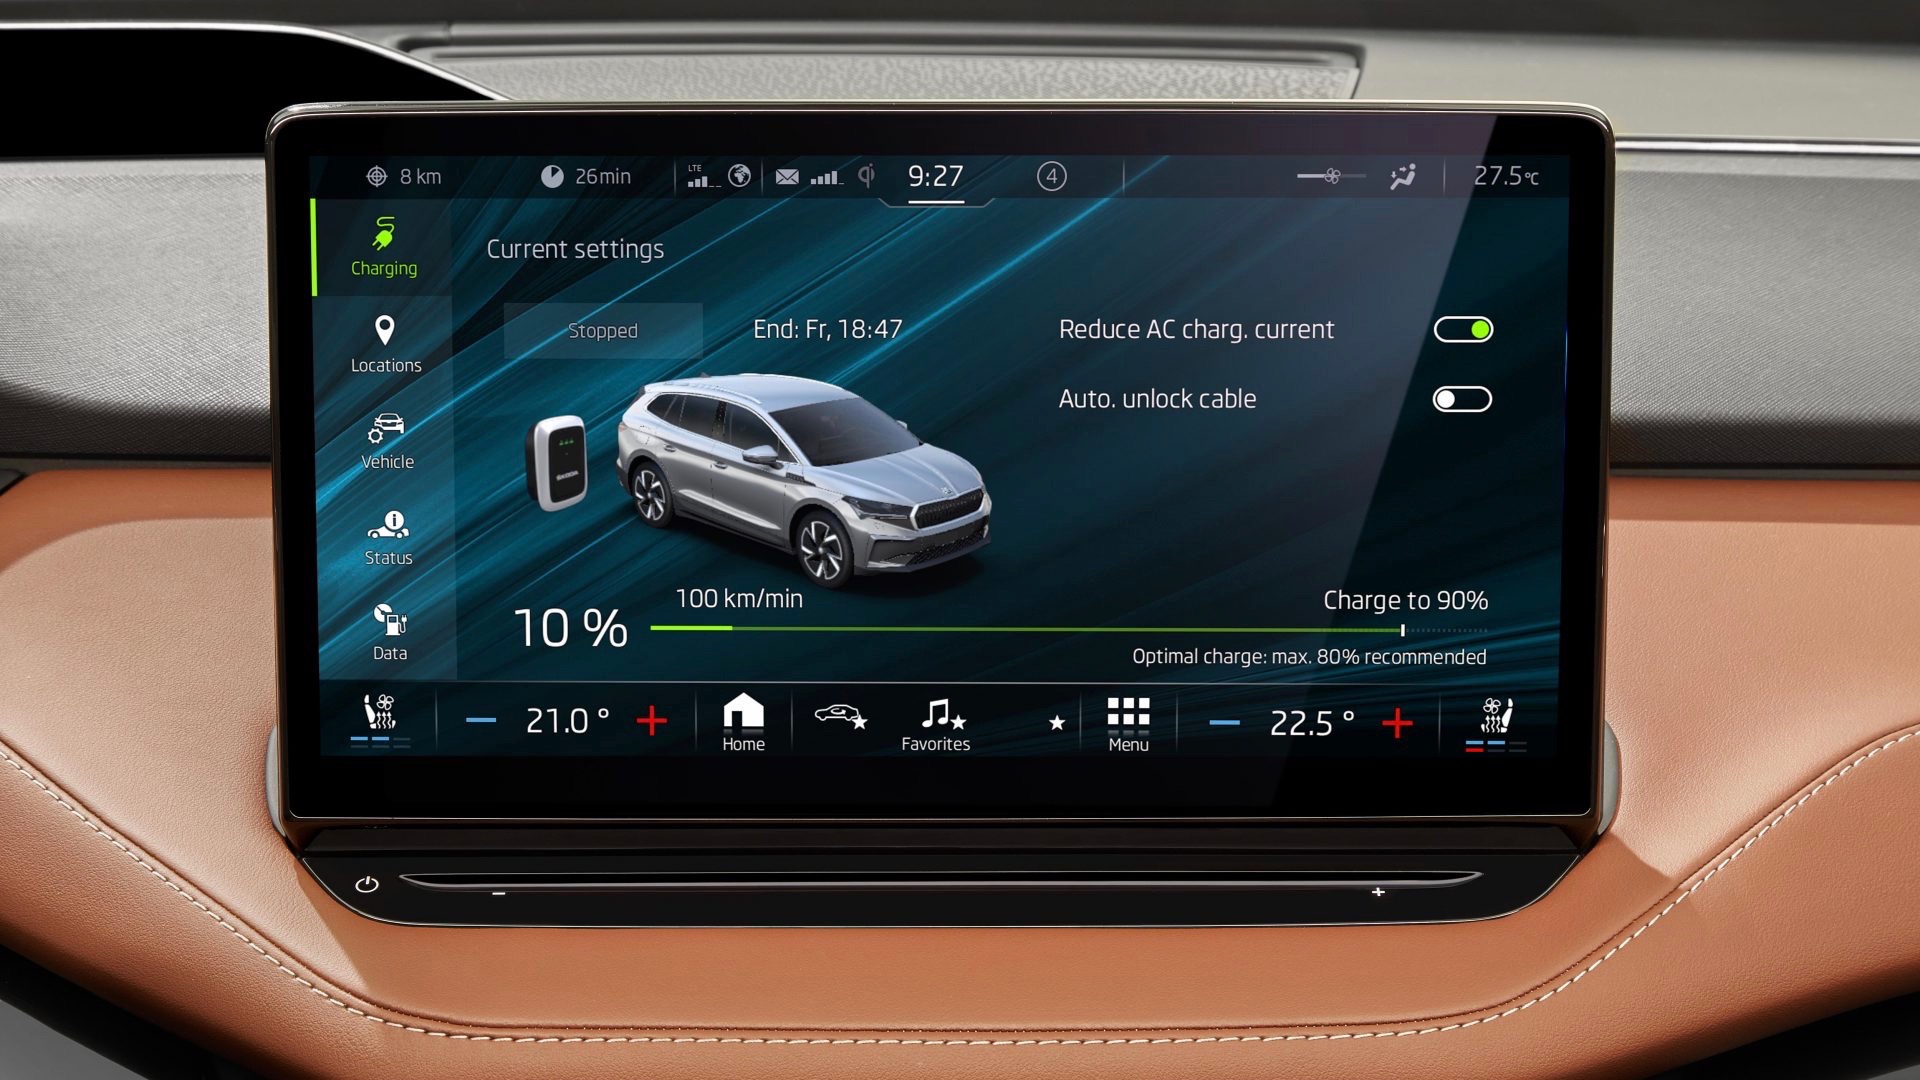 Škoda central touchscreen